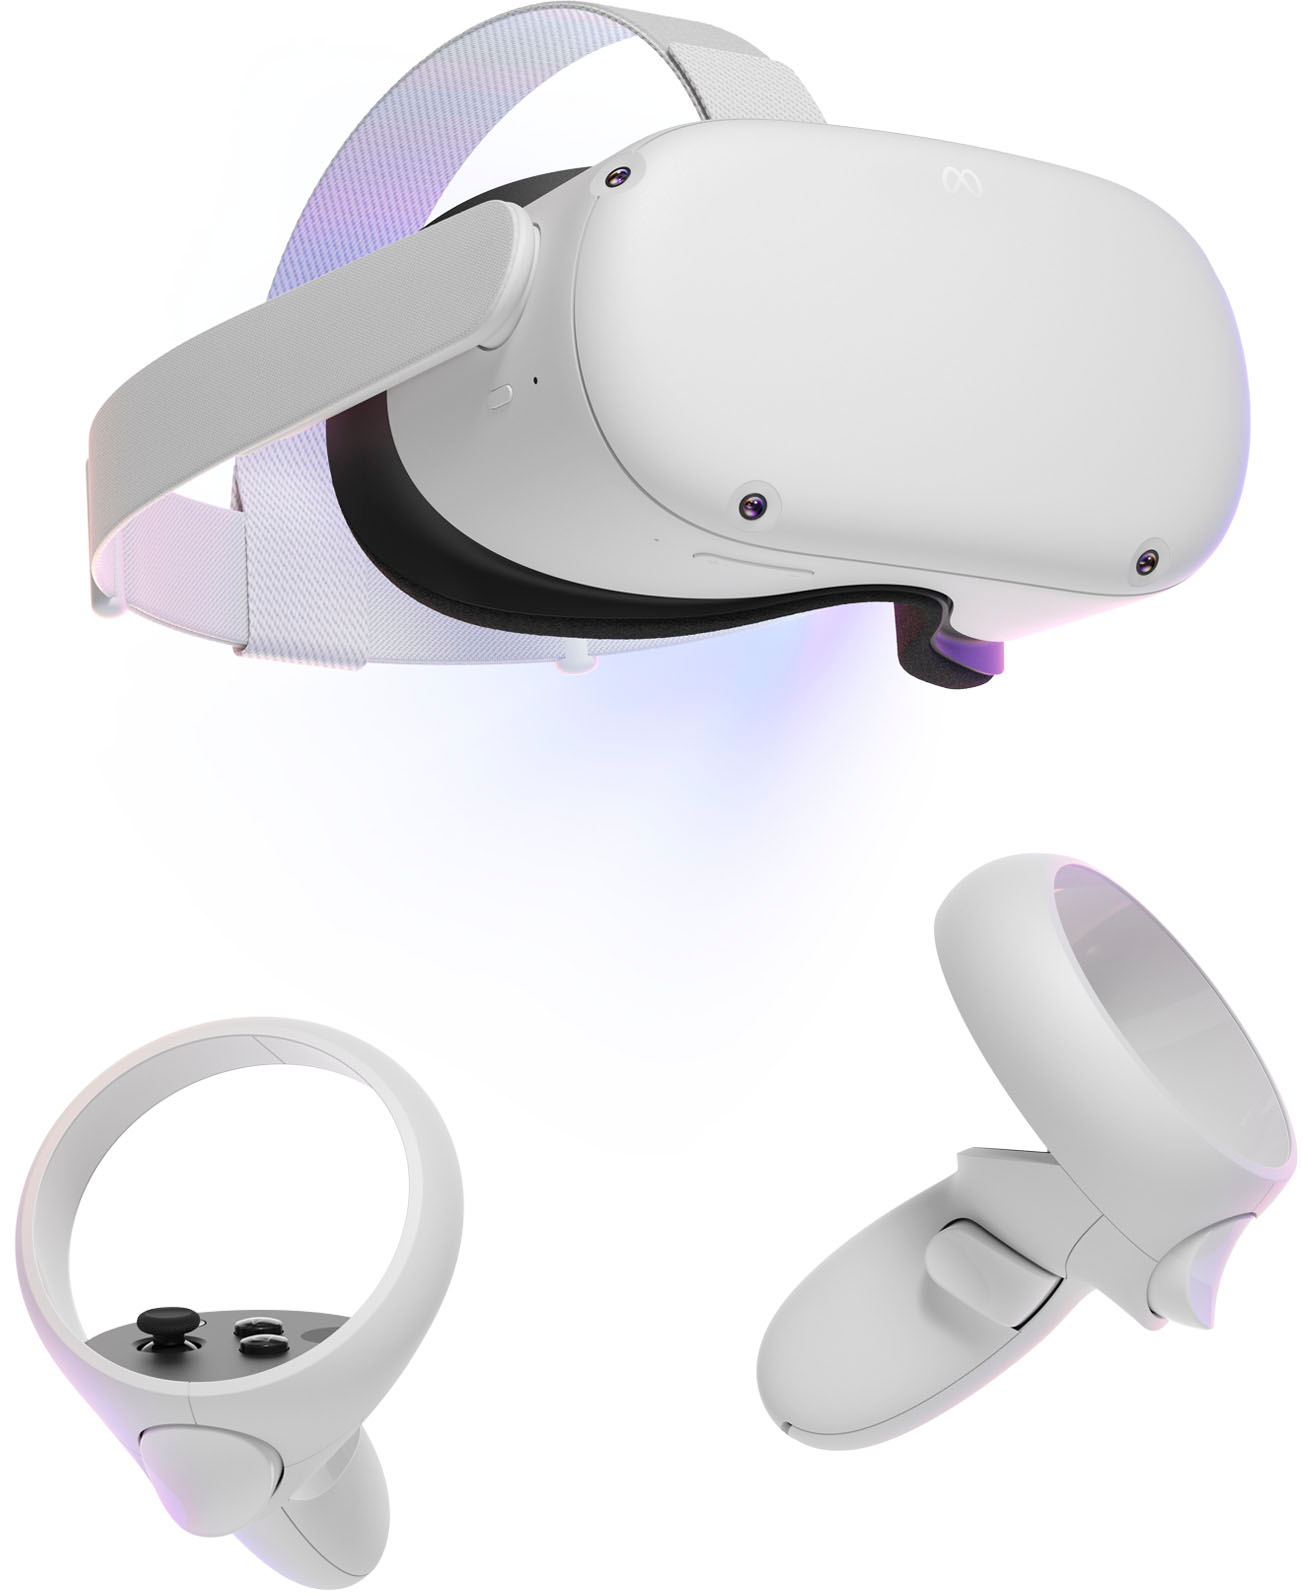 テレビ/映像機器 その他 Meta Quest 2 Advanced All-In-One Virtual Reality Headset 128GB 